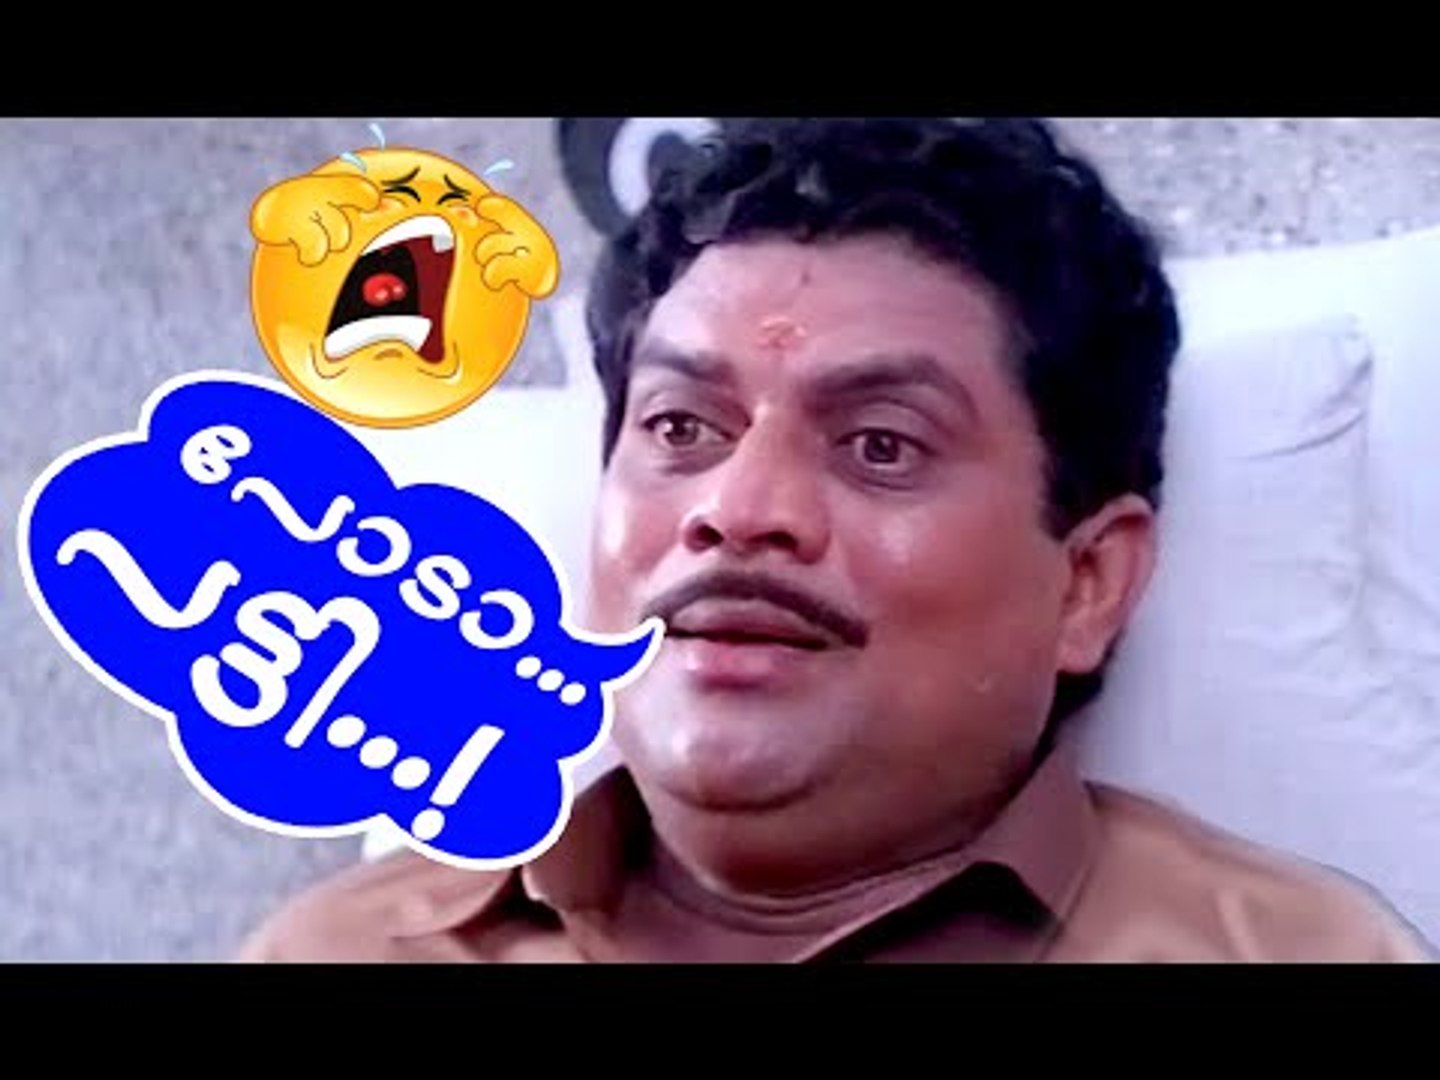 പോടാ പട്ടി | Malayalam Comedy Scenes From Movies| Jagathy Comedy Scenes| Malayalam Comedy Movies